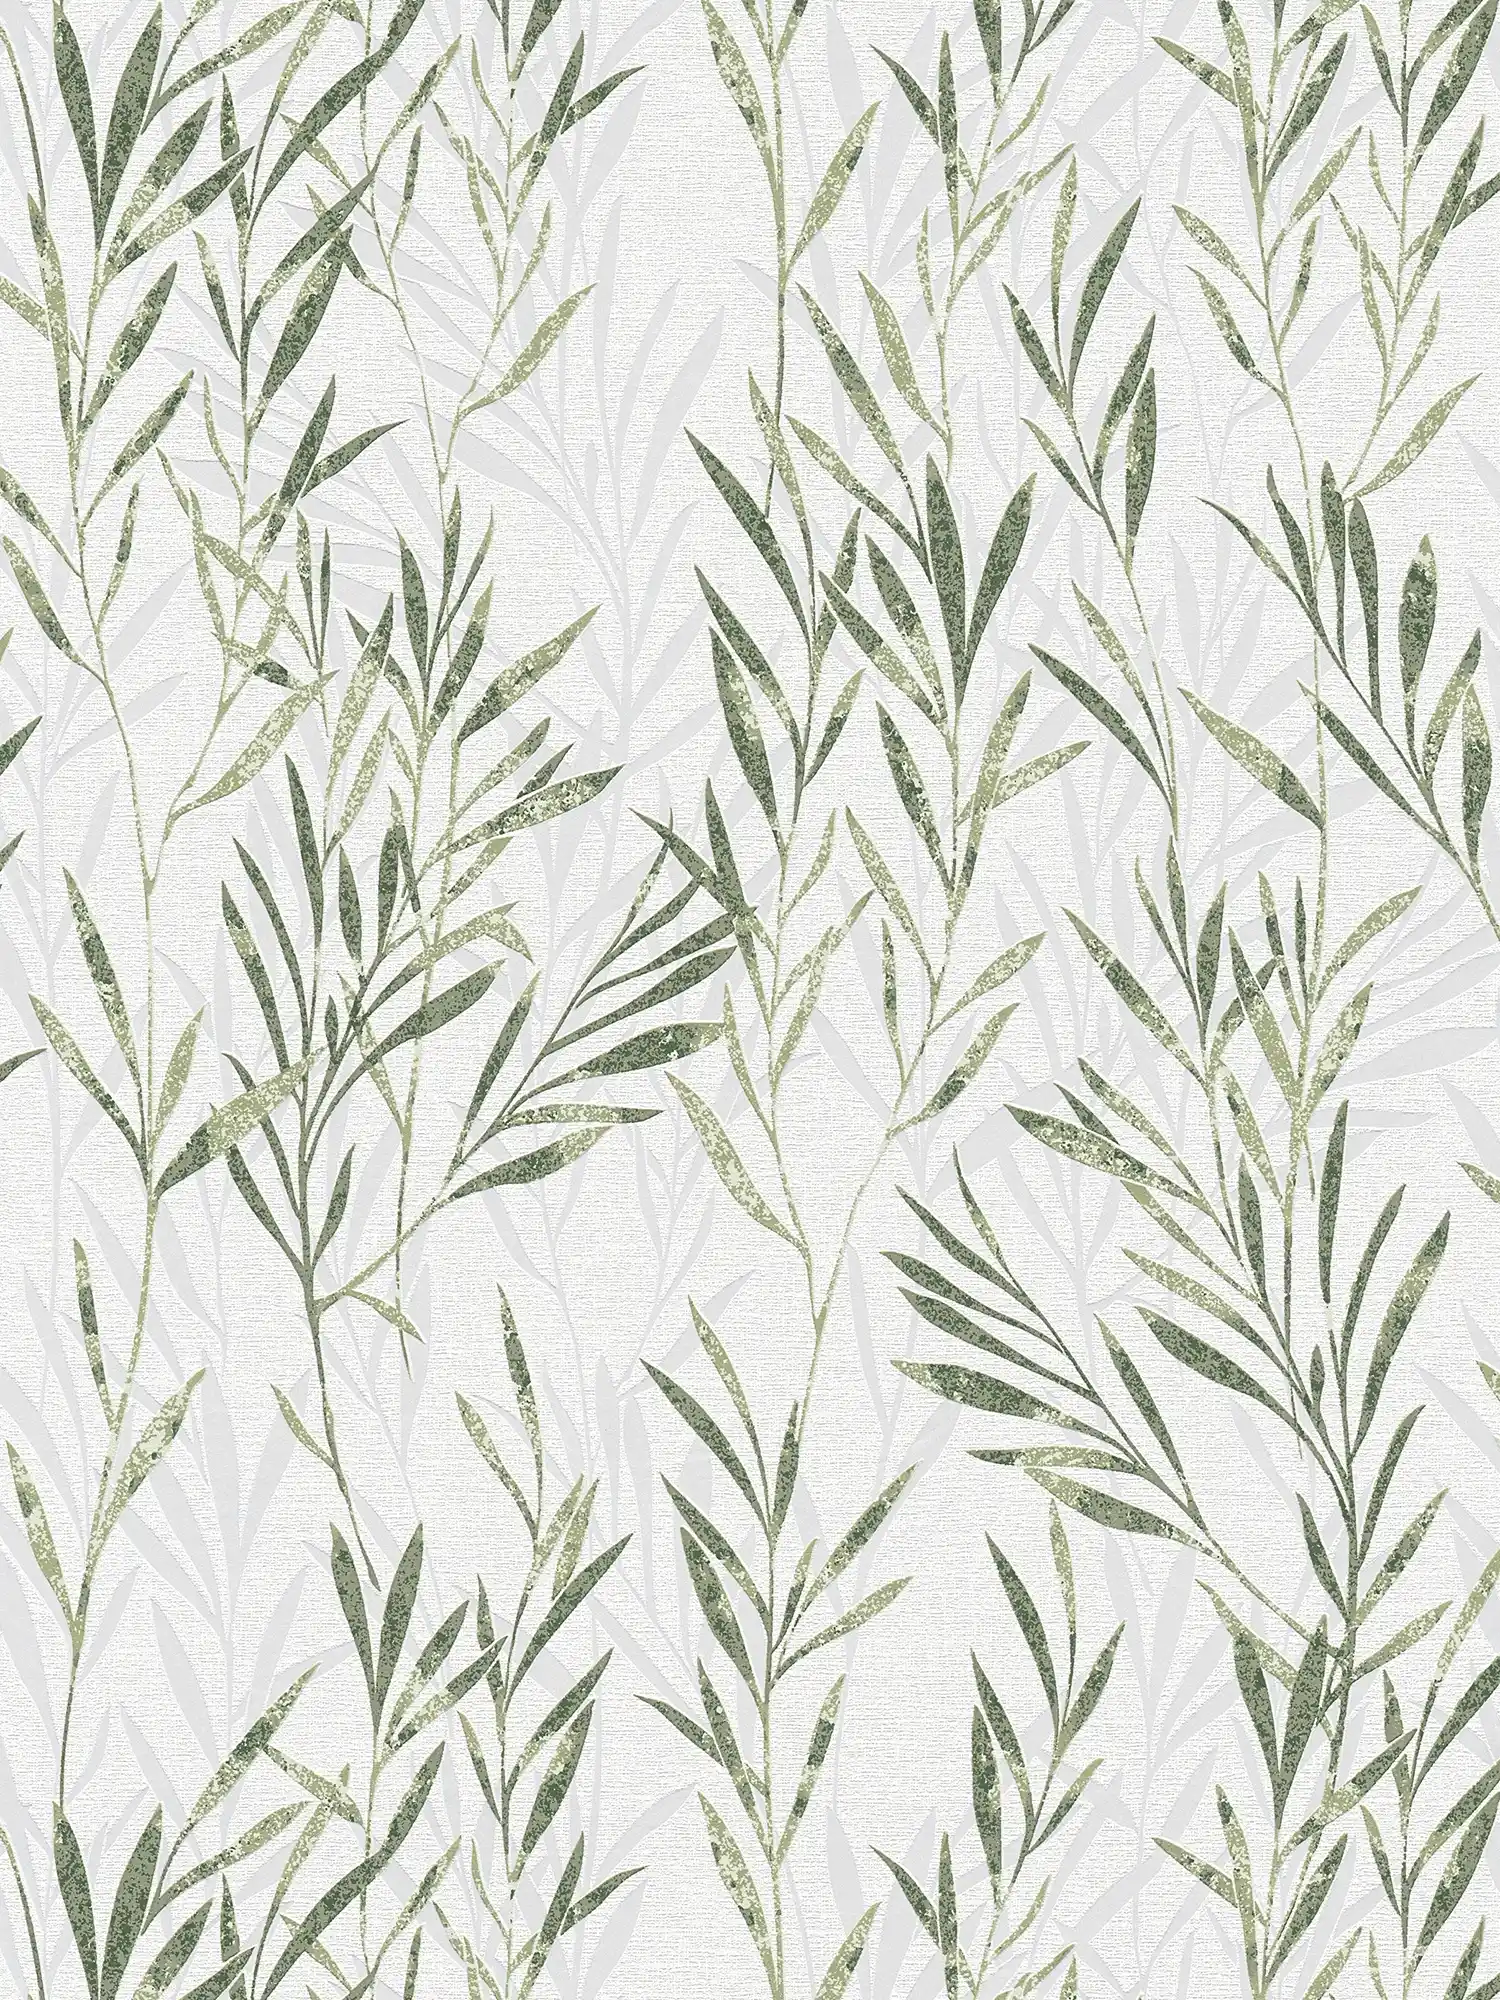 Vliestapete Blätter Design & Rankenmuster – Grün, Weiß
